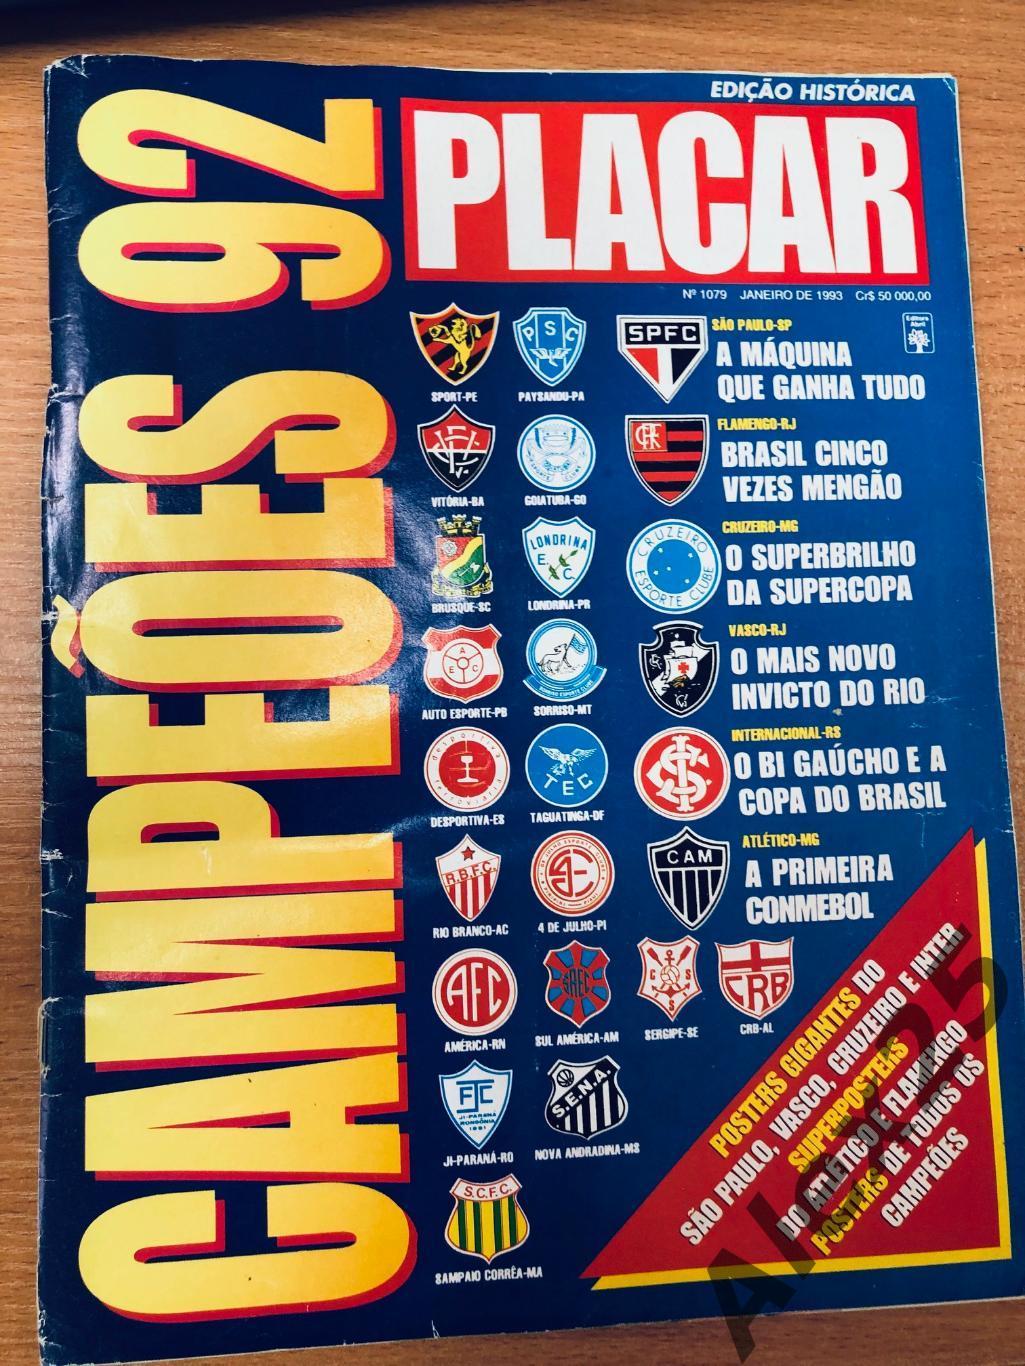 Журнал-справочник. Плакар / Placar Campeos 92 (Бразилия) № 1079 (январь) 1992 г.